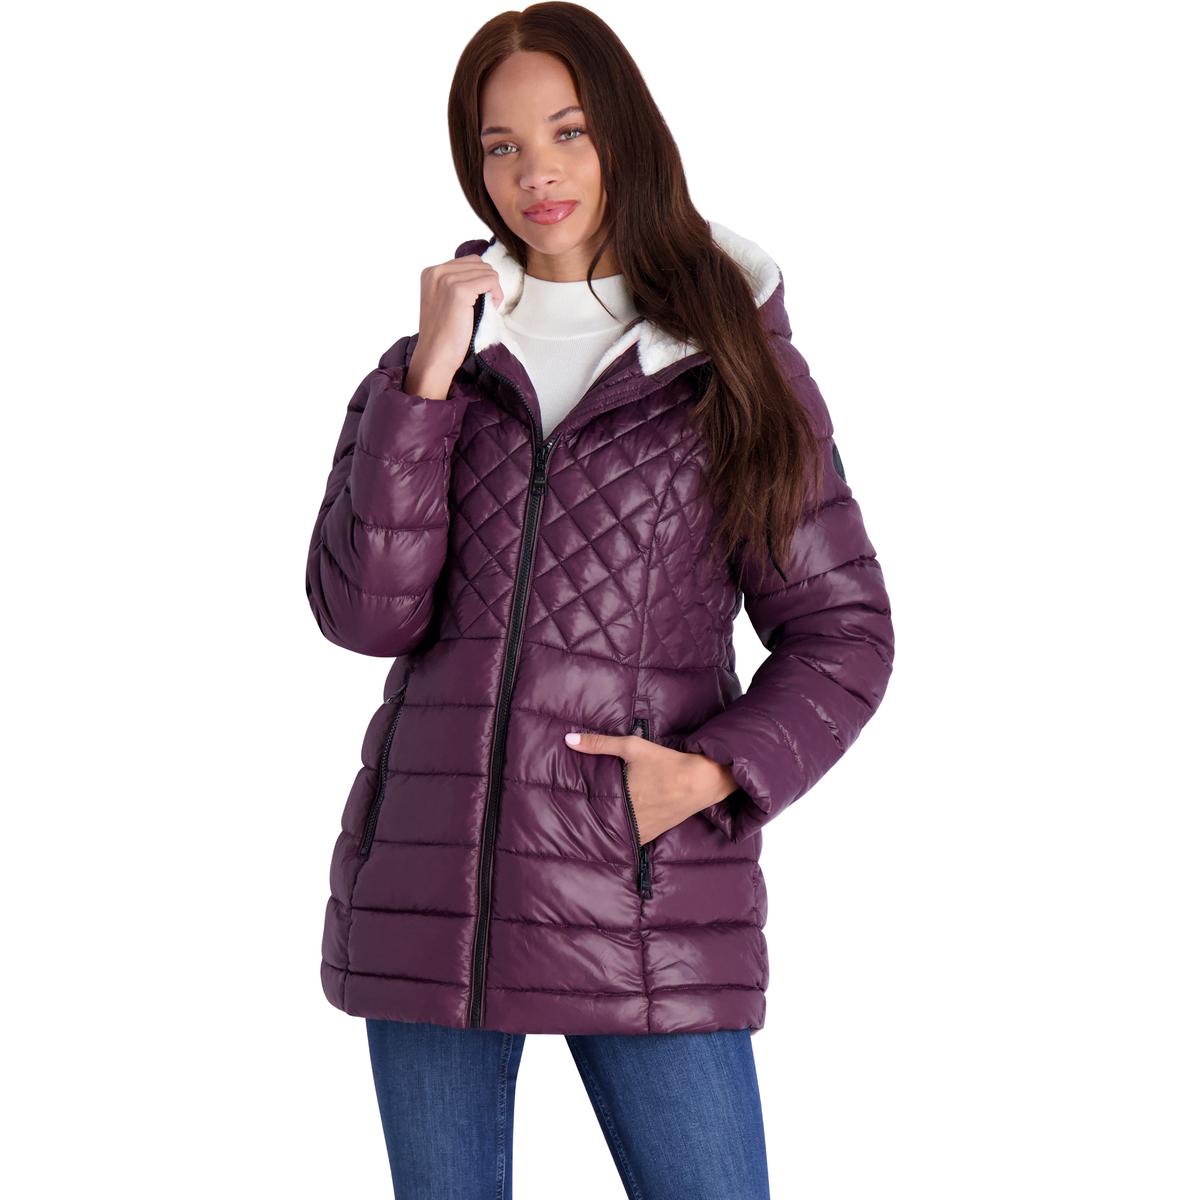 Steve Madden Women's Glacier Shield Winter Puffer Coat with Faux